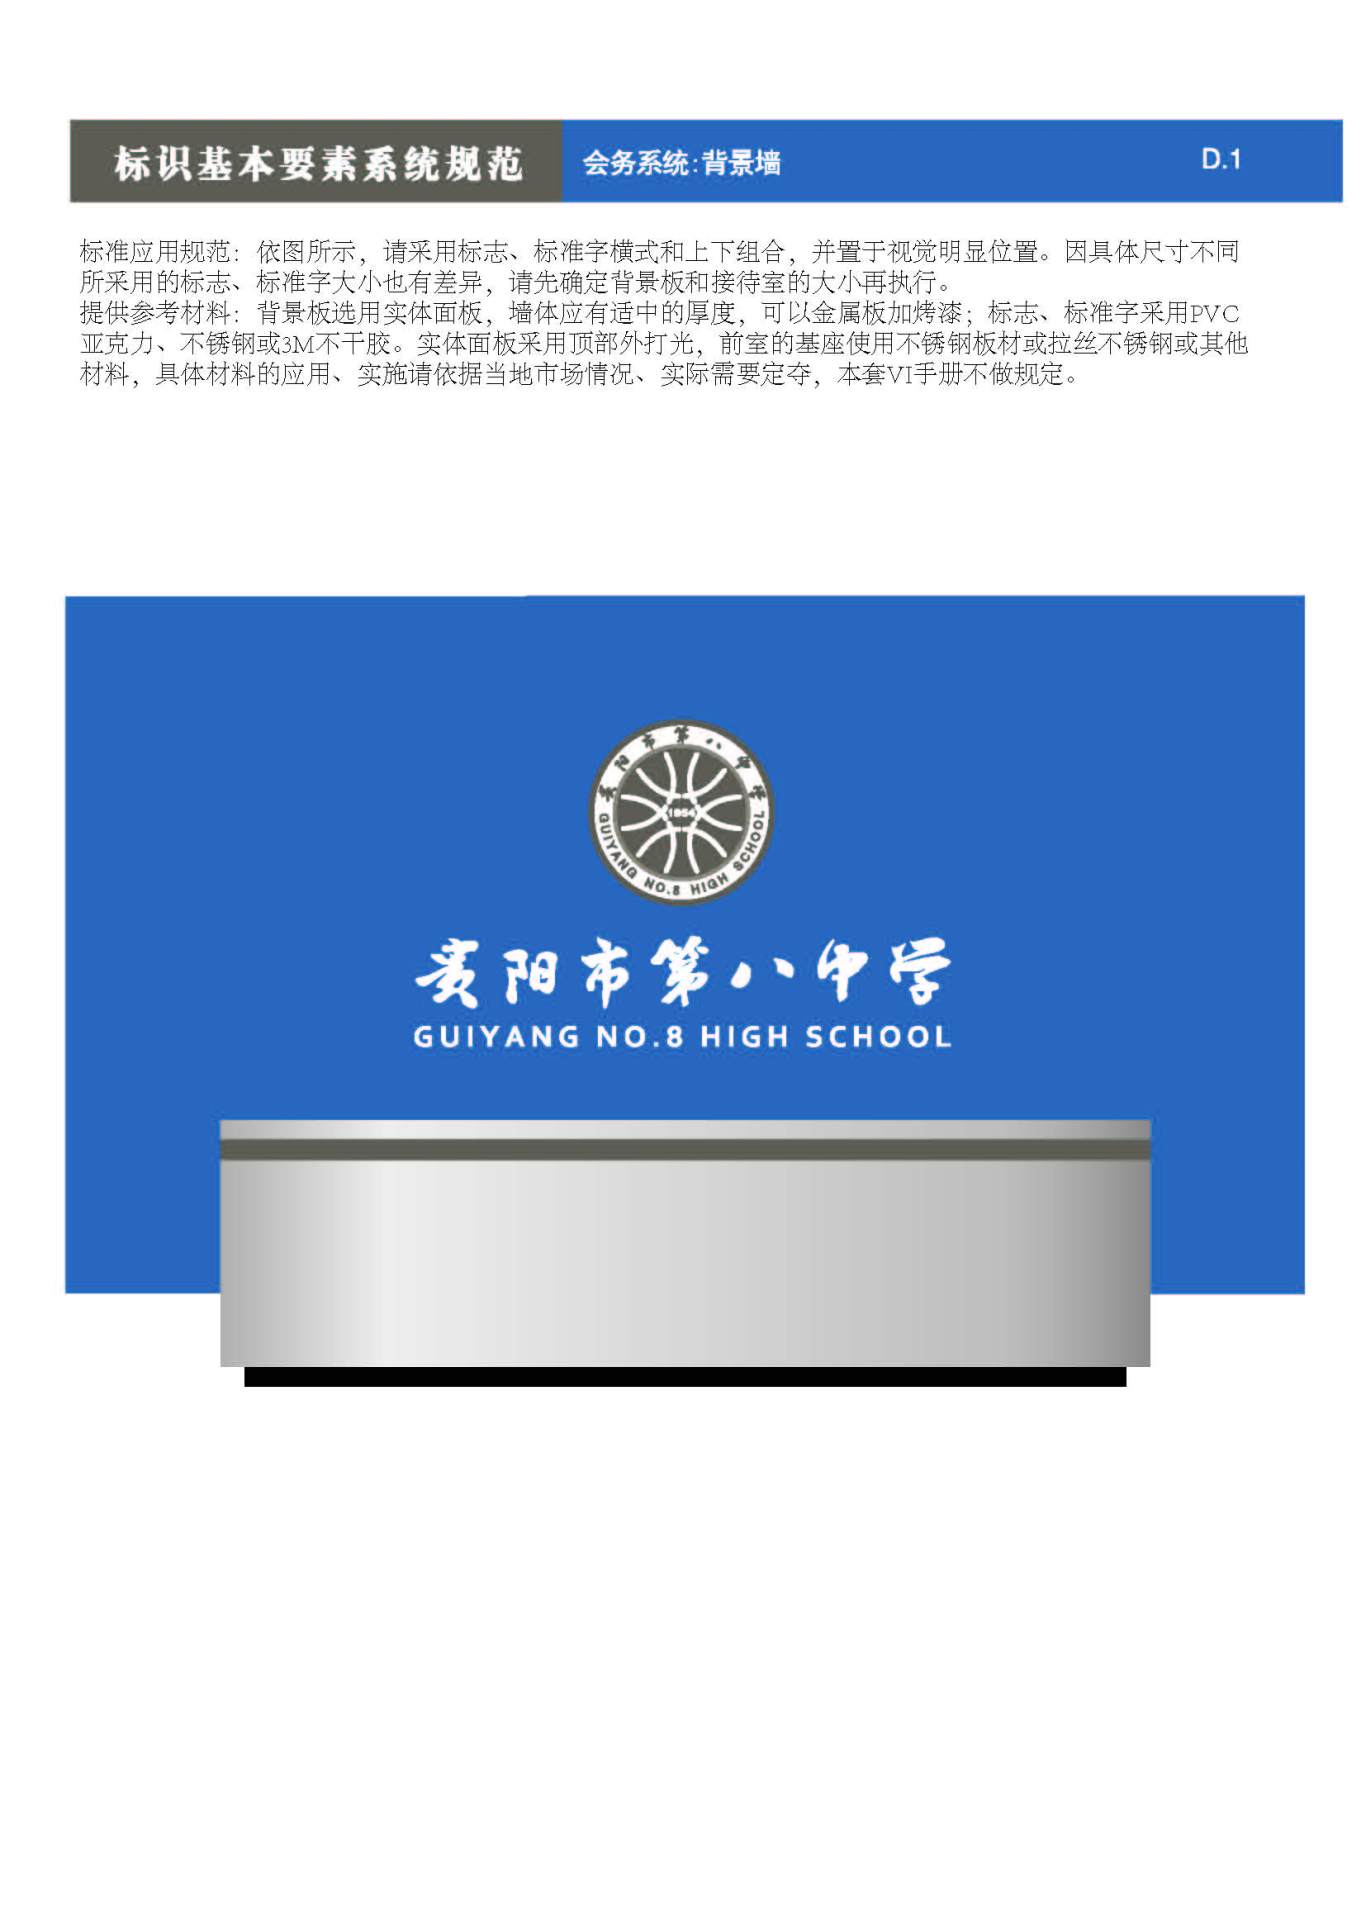 贵阳第八中学Logo、VIS设计图70